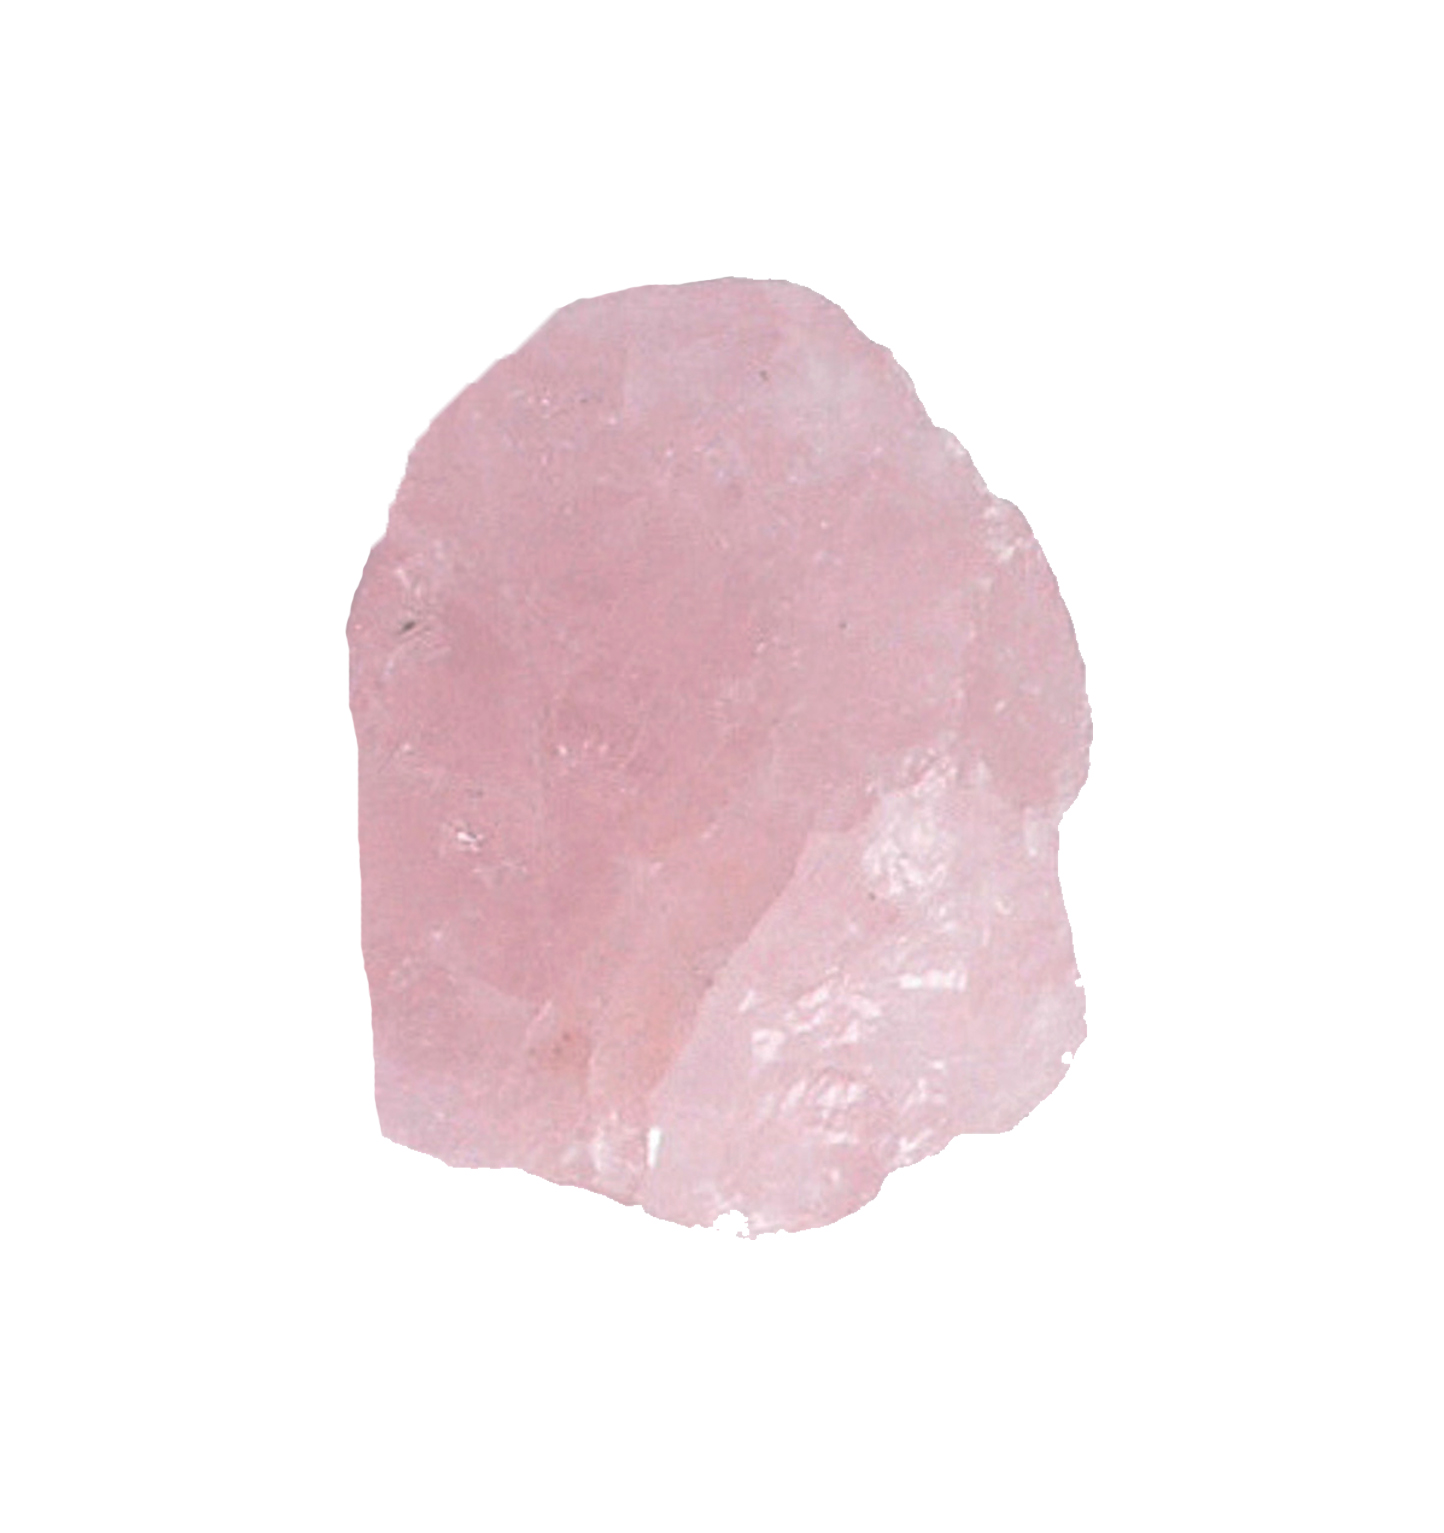 image of rough rose quartz crystal